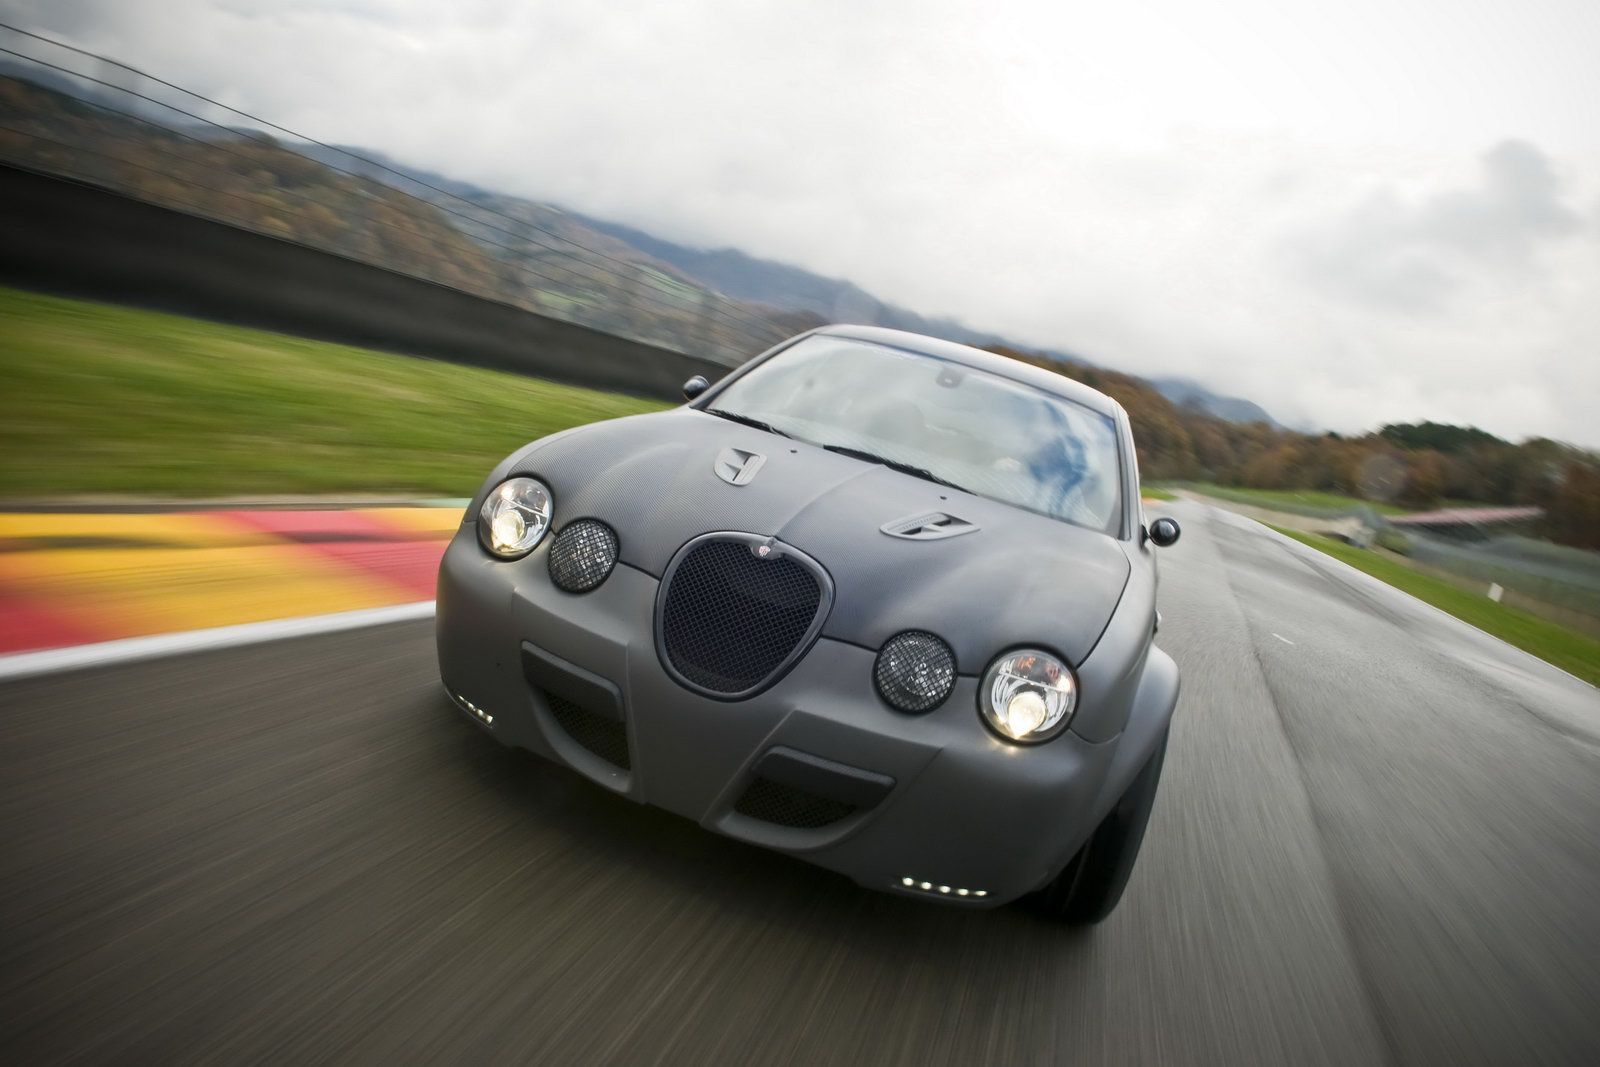 Jaguar S-Type Vintage GT by Panzani Design - Drive